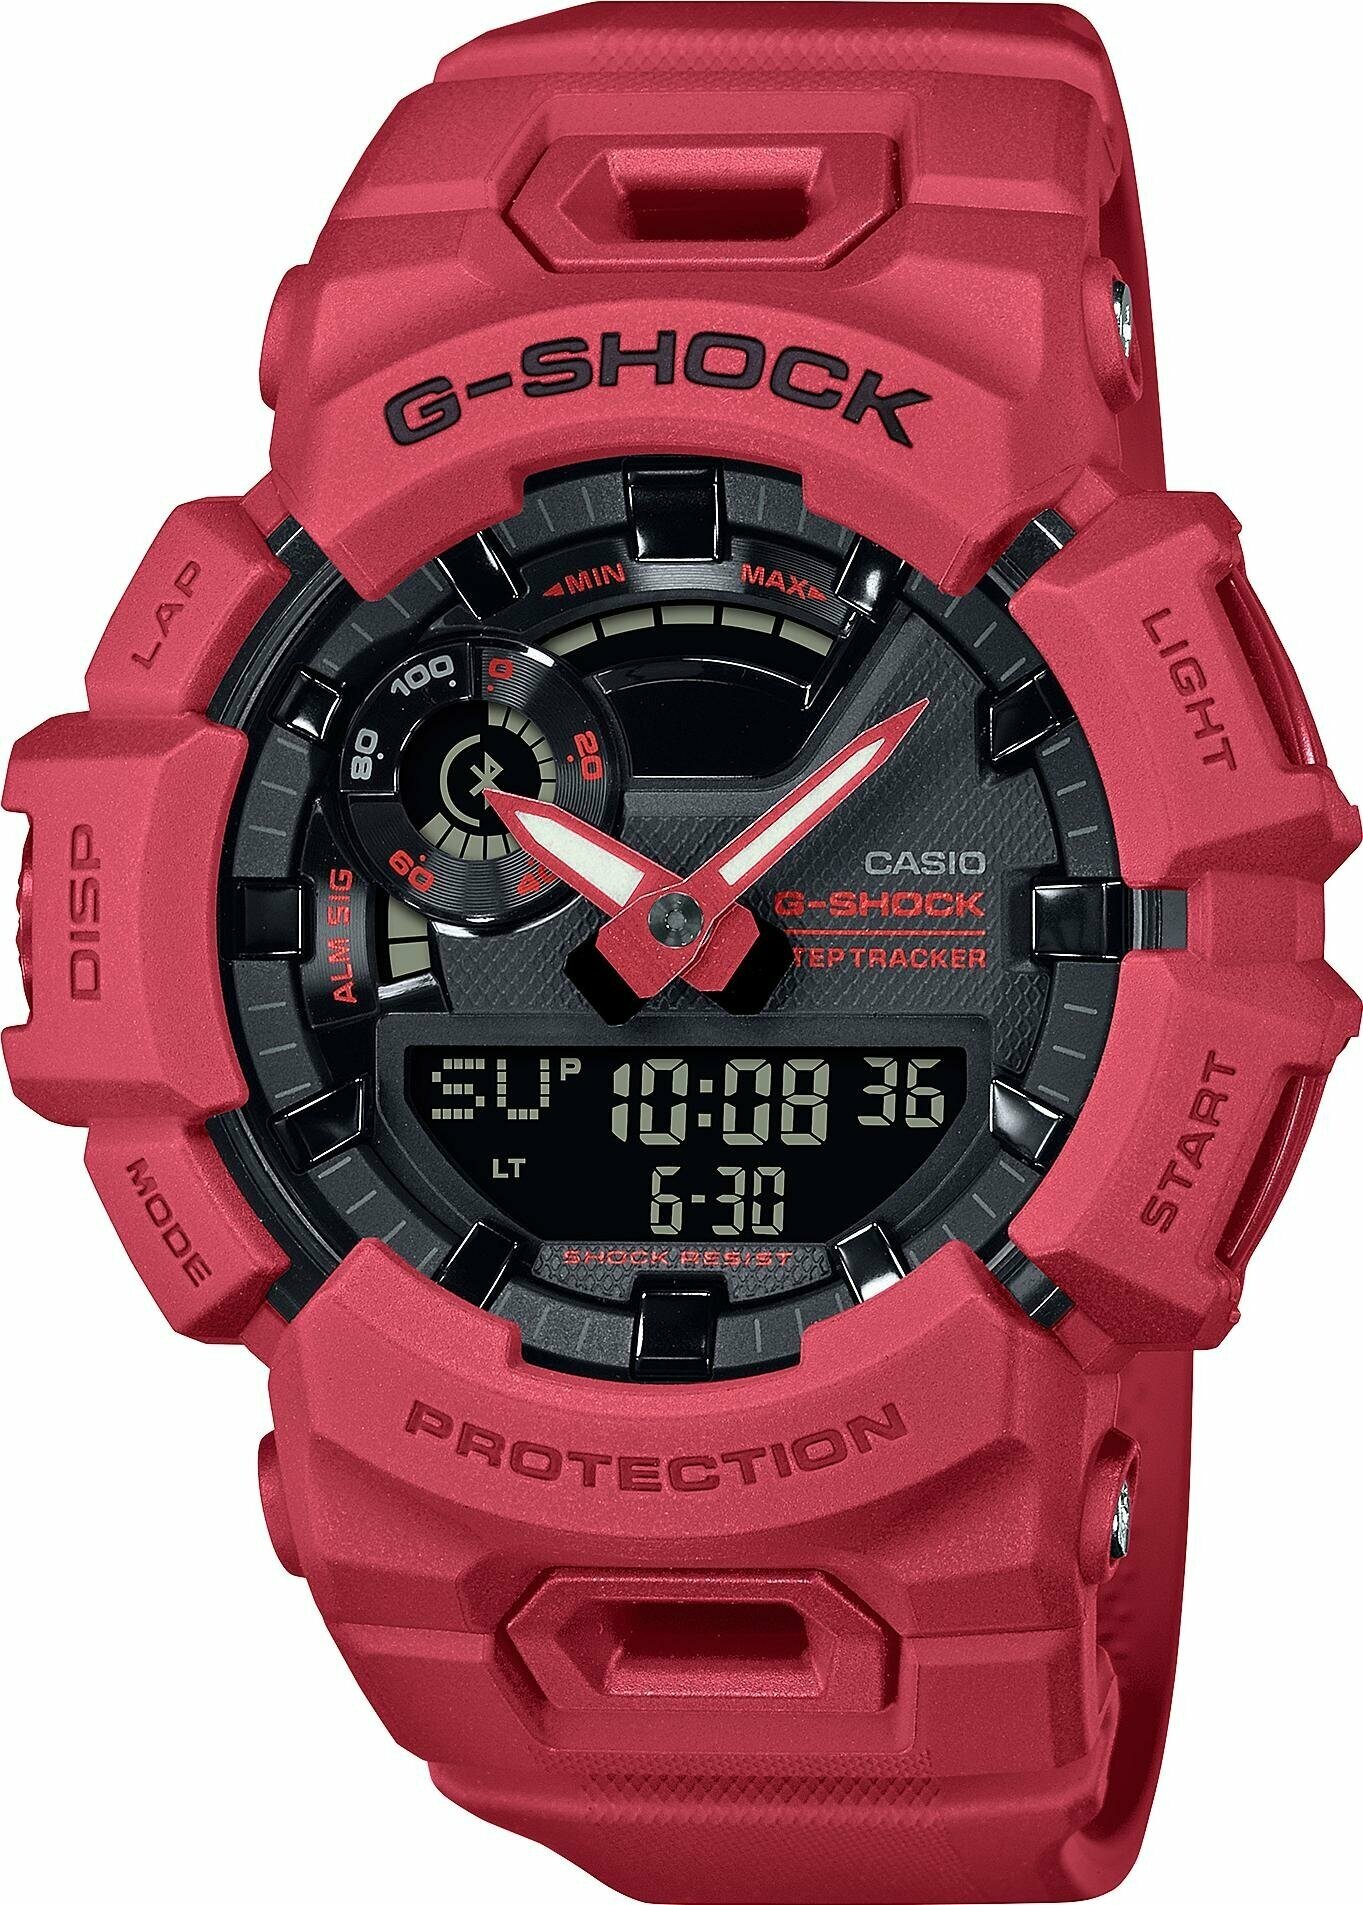 Наручные часы CASIO G-Shock GBA-900RD-4A